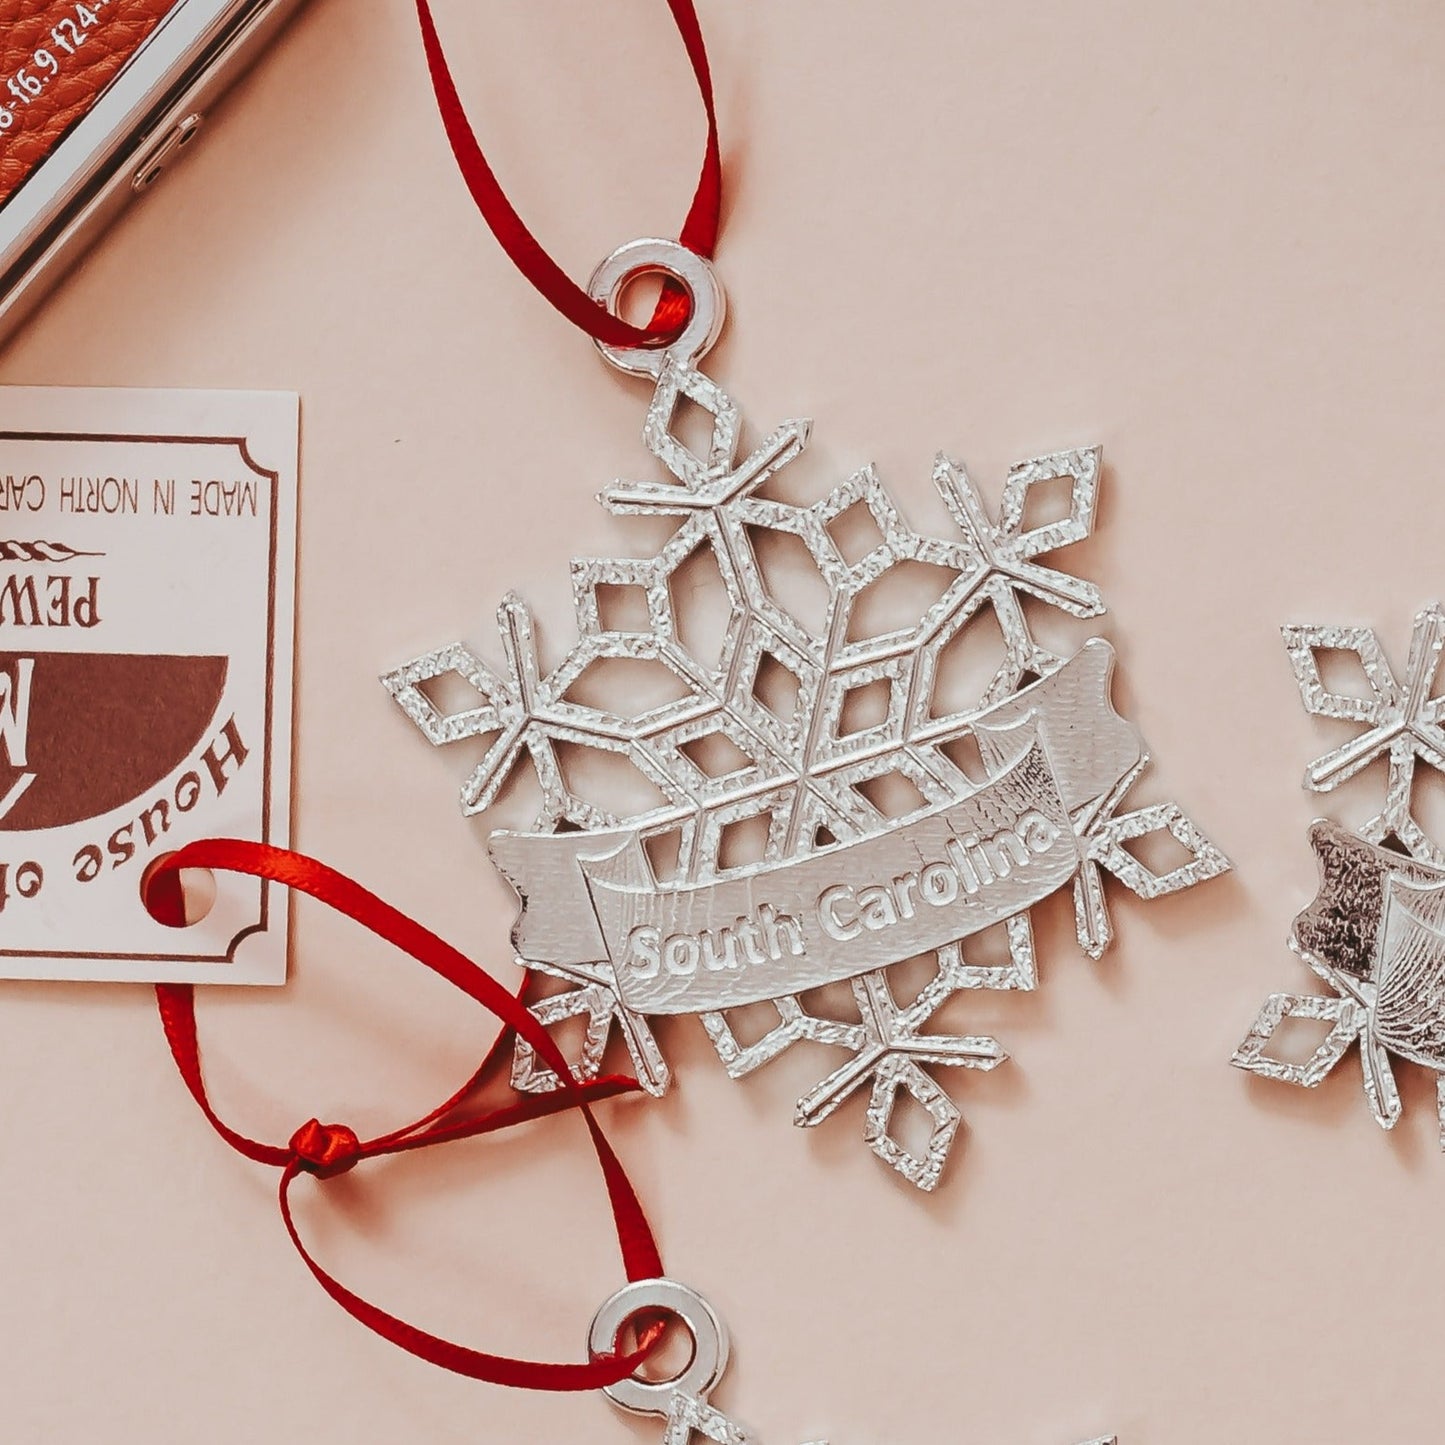 Snowflake Gifts - North Carolina Snowflake - Tennessee Snowflake - South Carolina Snowflake - Virginia Snowflake - Christmas Ornament